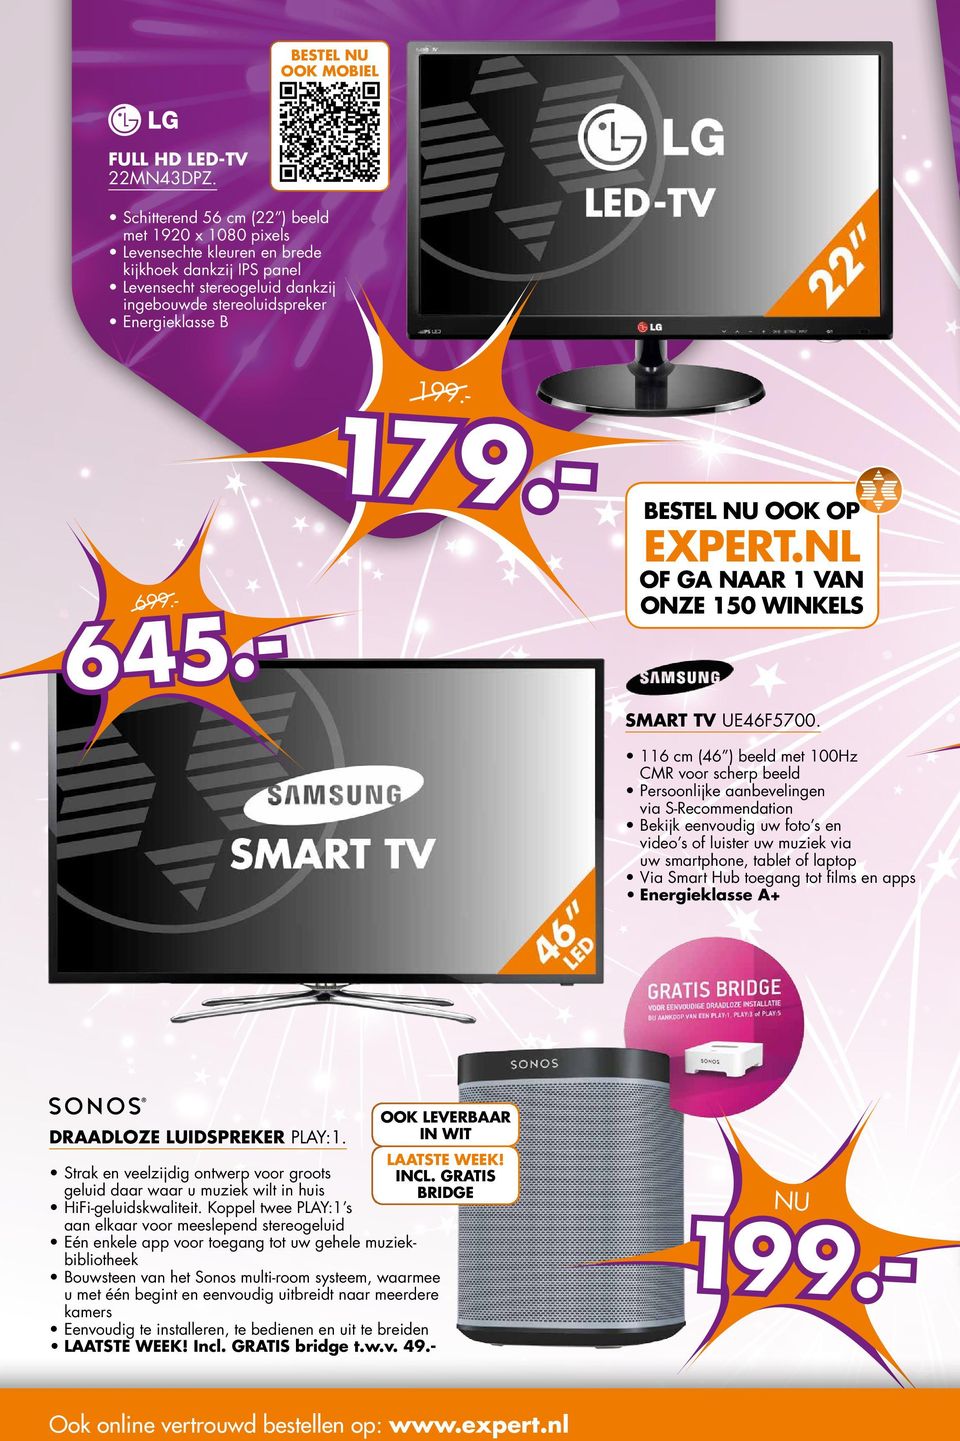 - 645.- 199.- 199.- Bestel nu ook op Expert.nl of ga naar 1 van onze 150 winkels SMART TV UE46F5700.